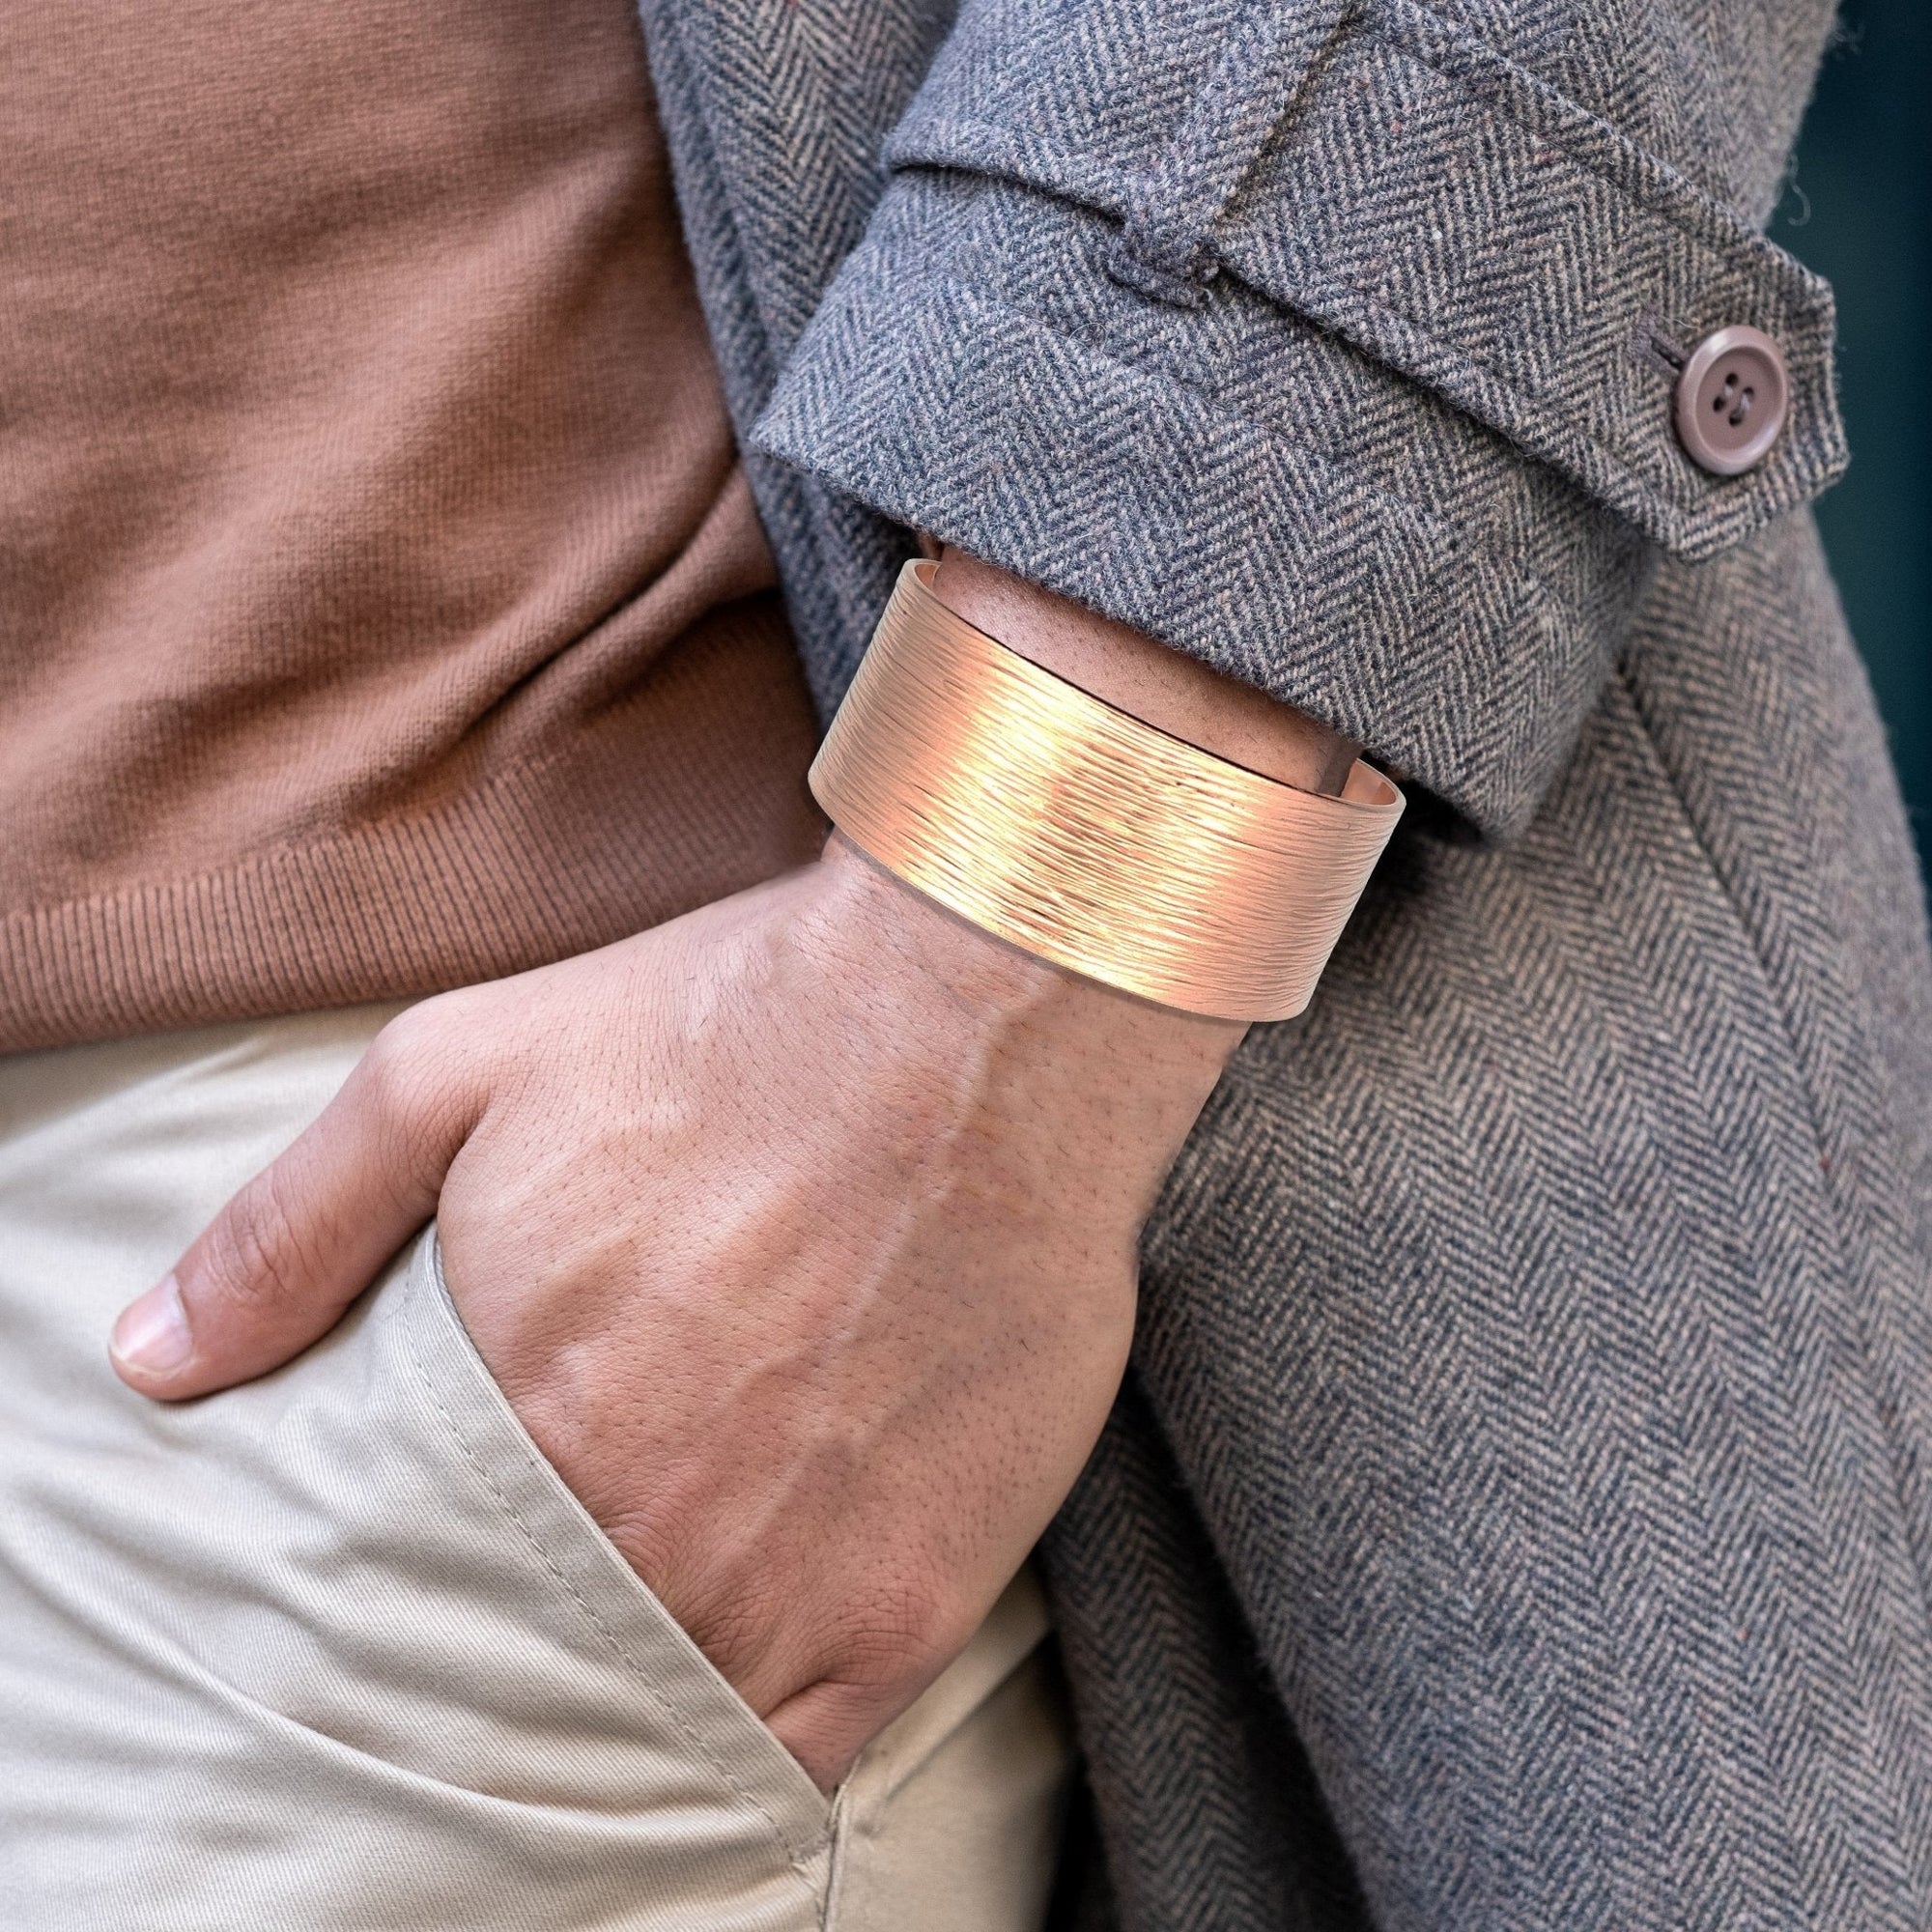 1 Inch Wide Men's Bark Copper Cuff Bracelet on Wrist